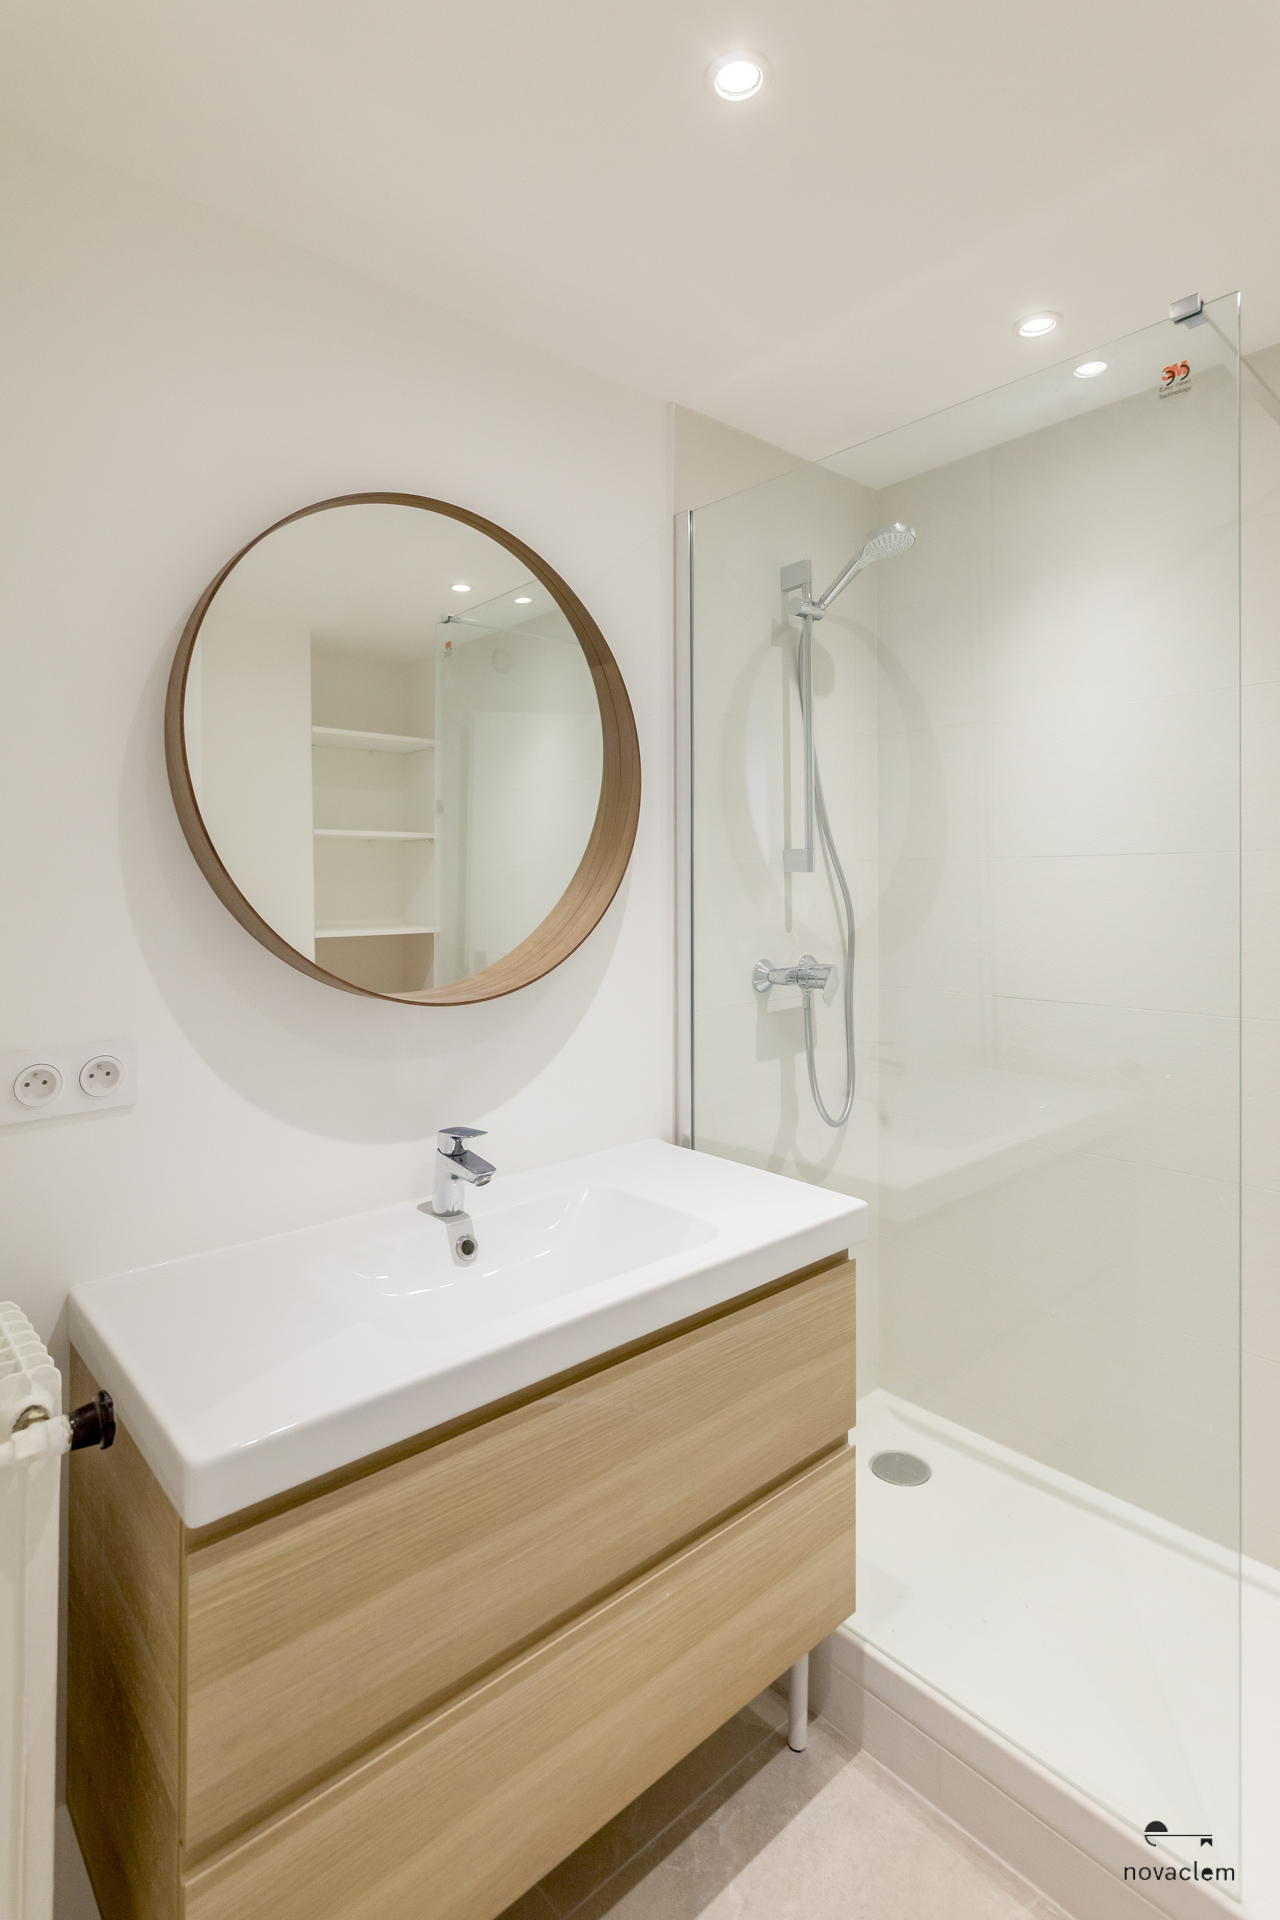 Novaclem - salle de bain colocation Canada après travaux - Investissement Marseille